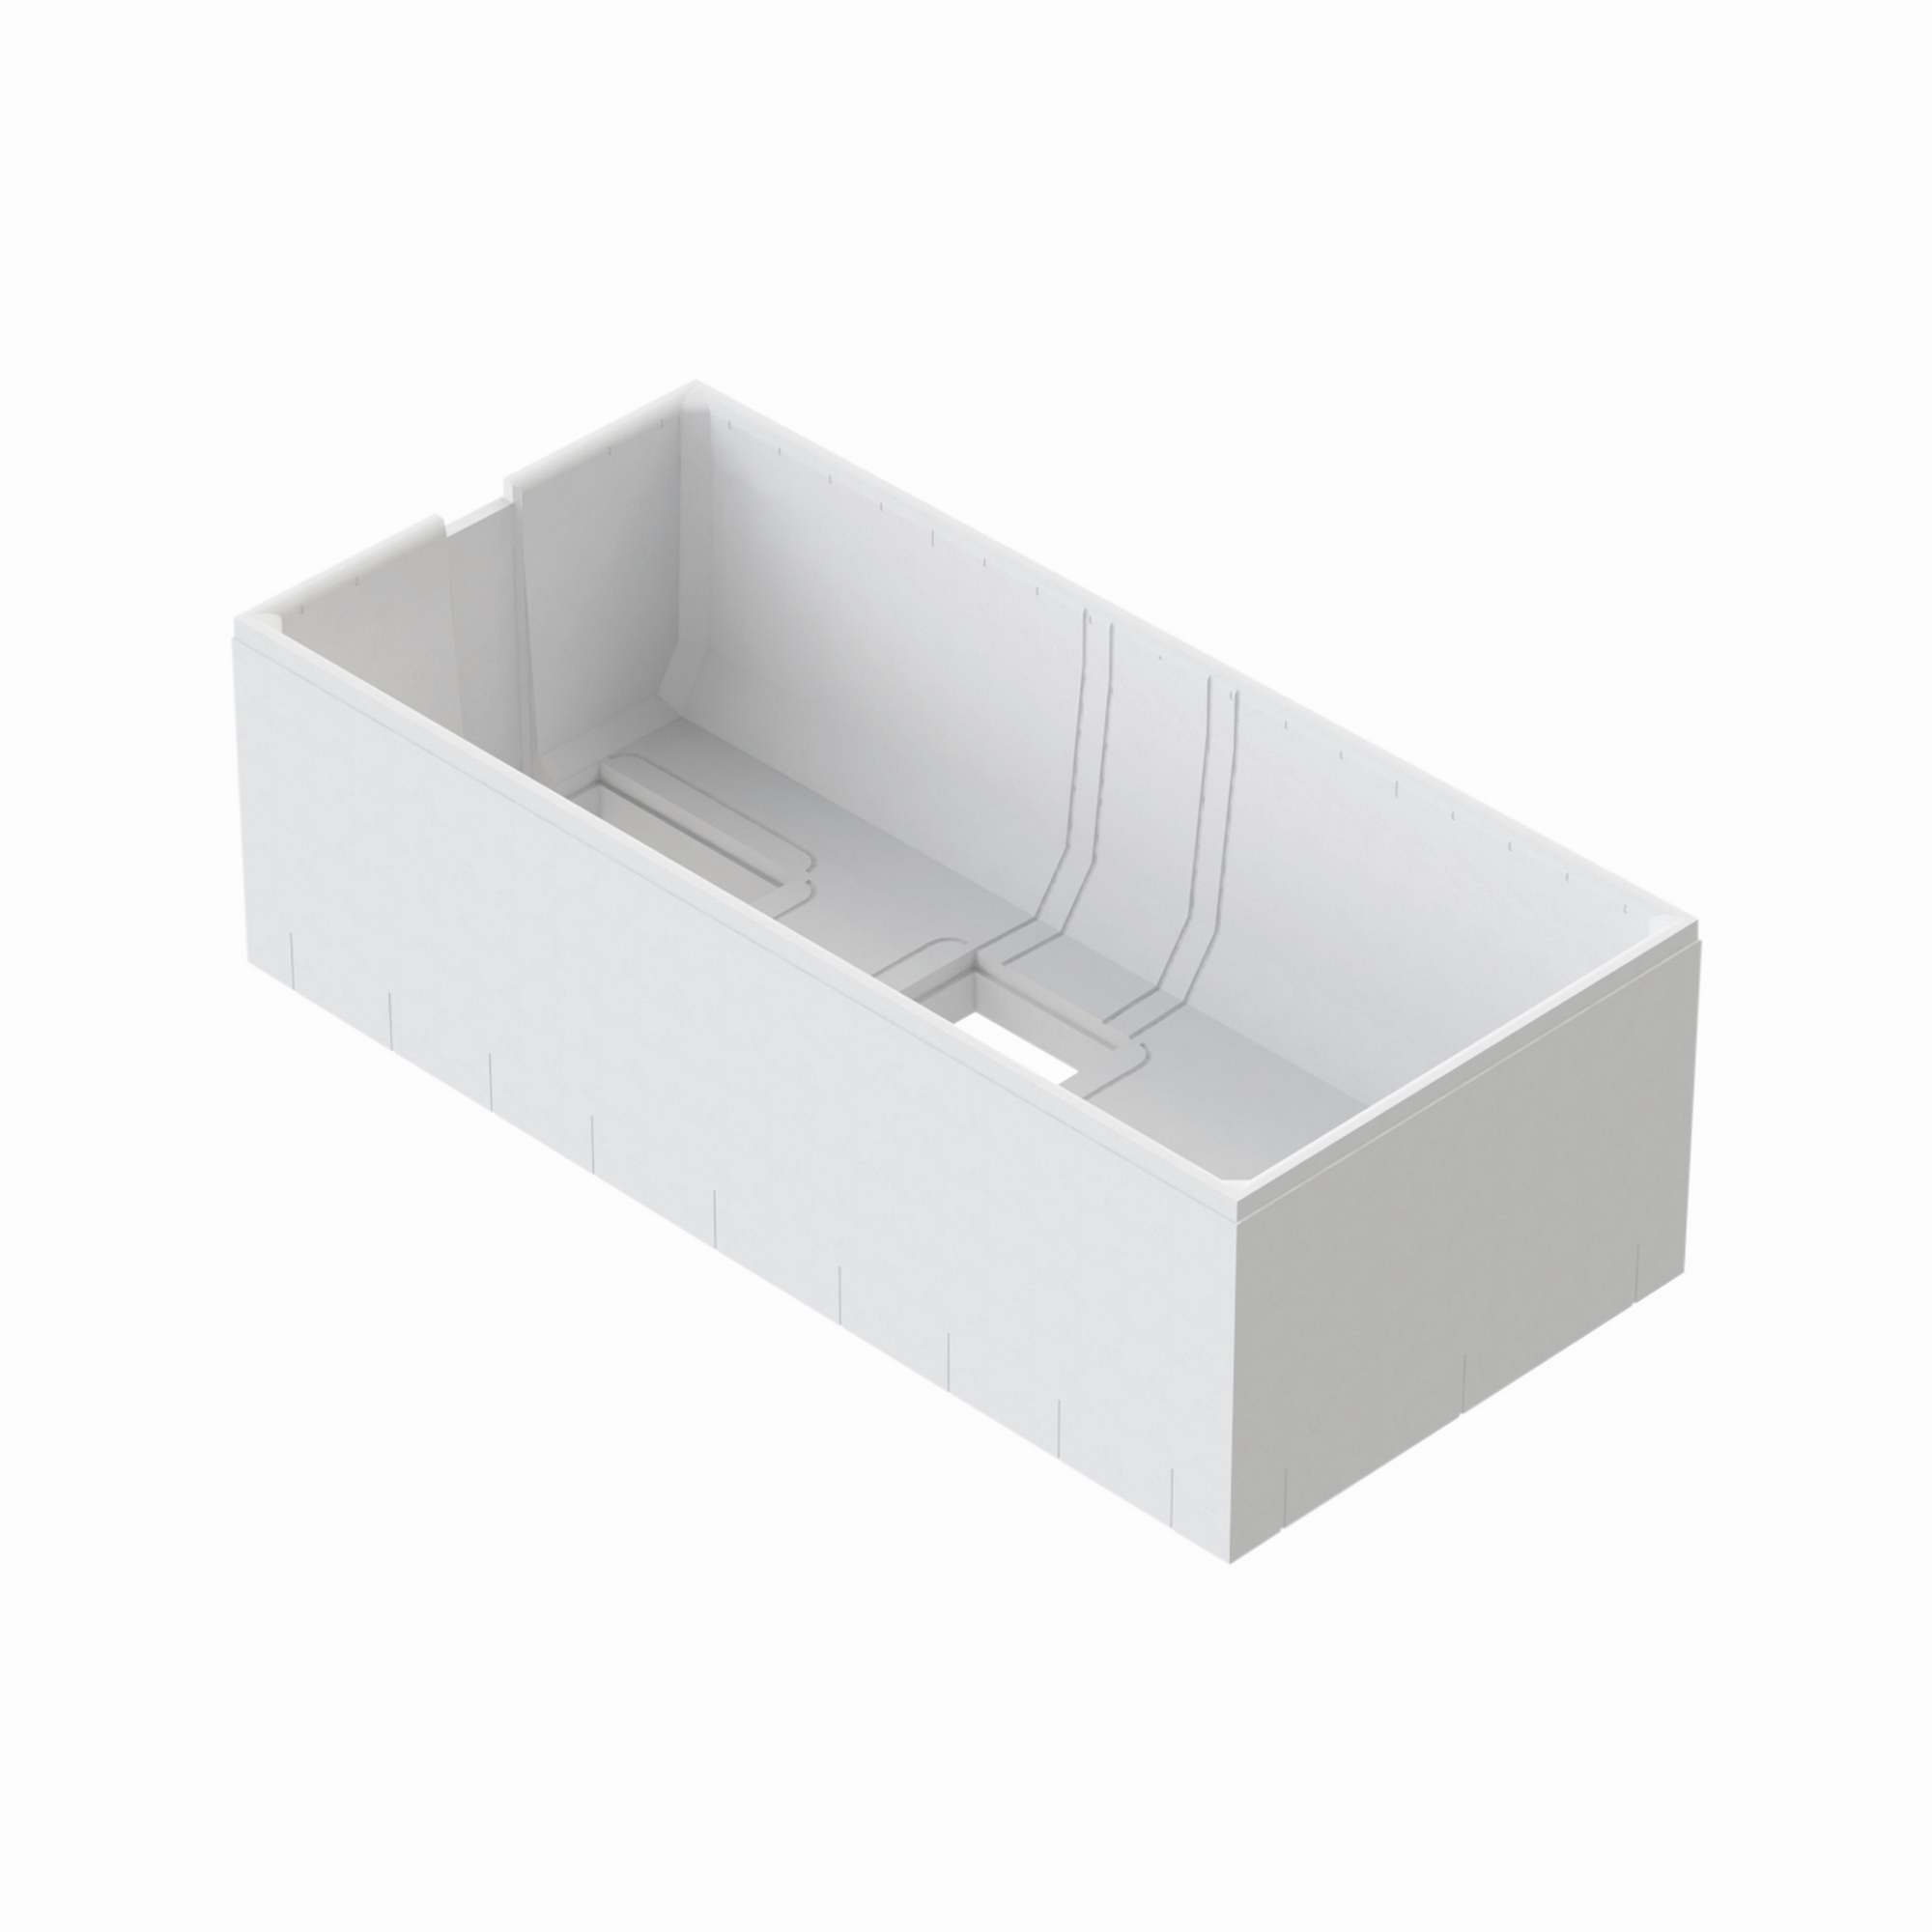 Wannenträger zu Badewanne 'Rosa' 170 x 80 cm weiß + product picture